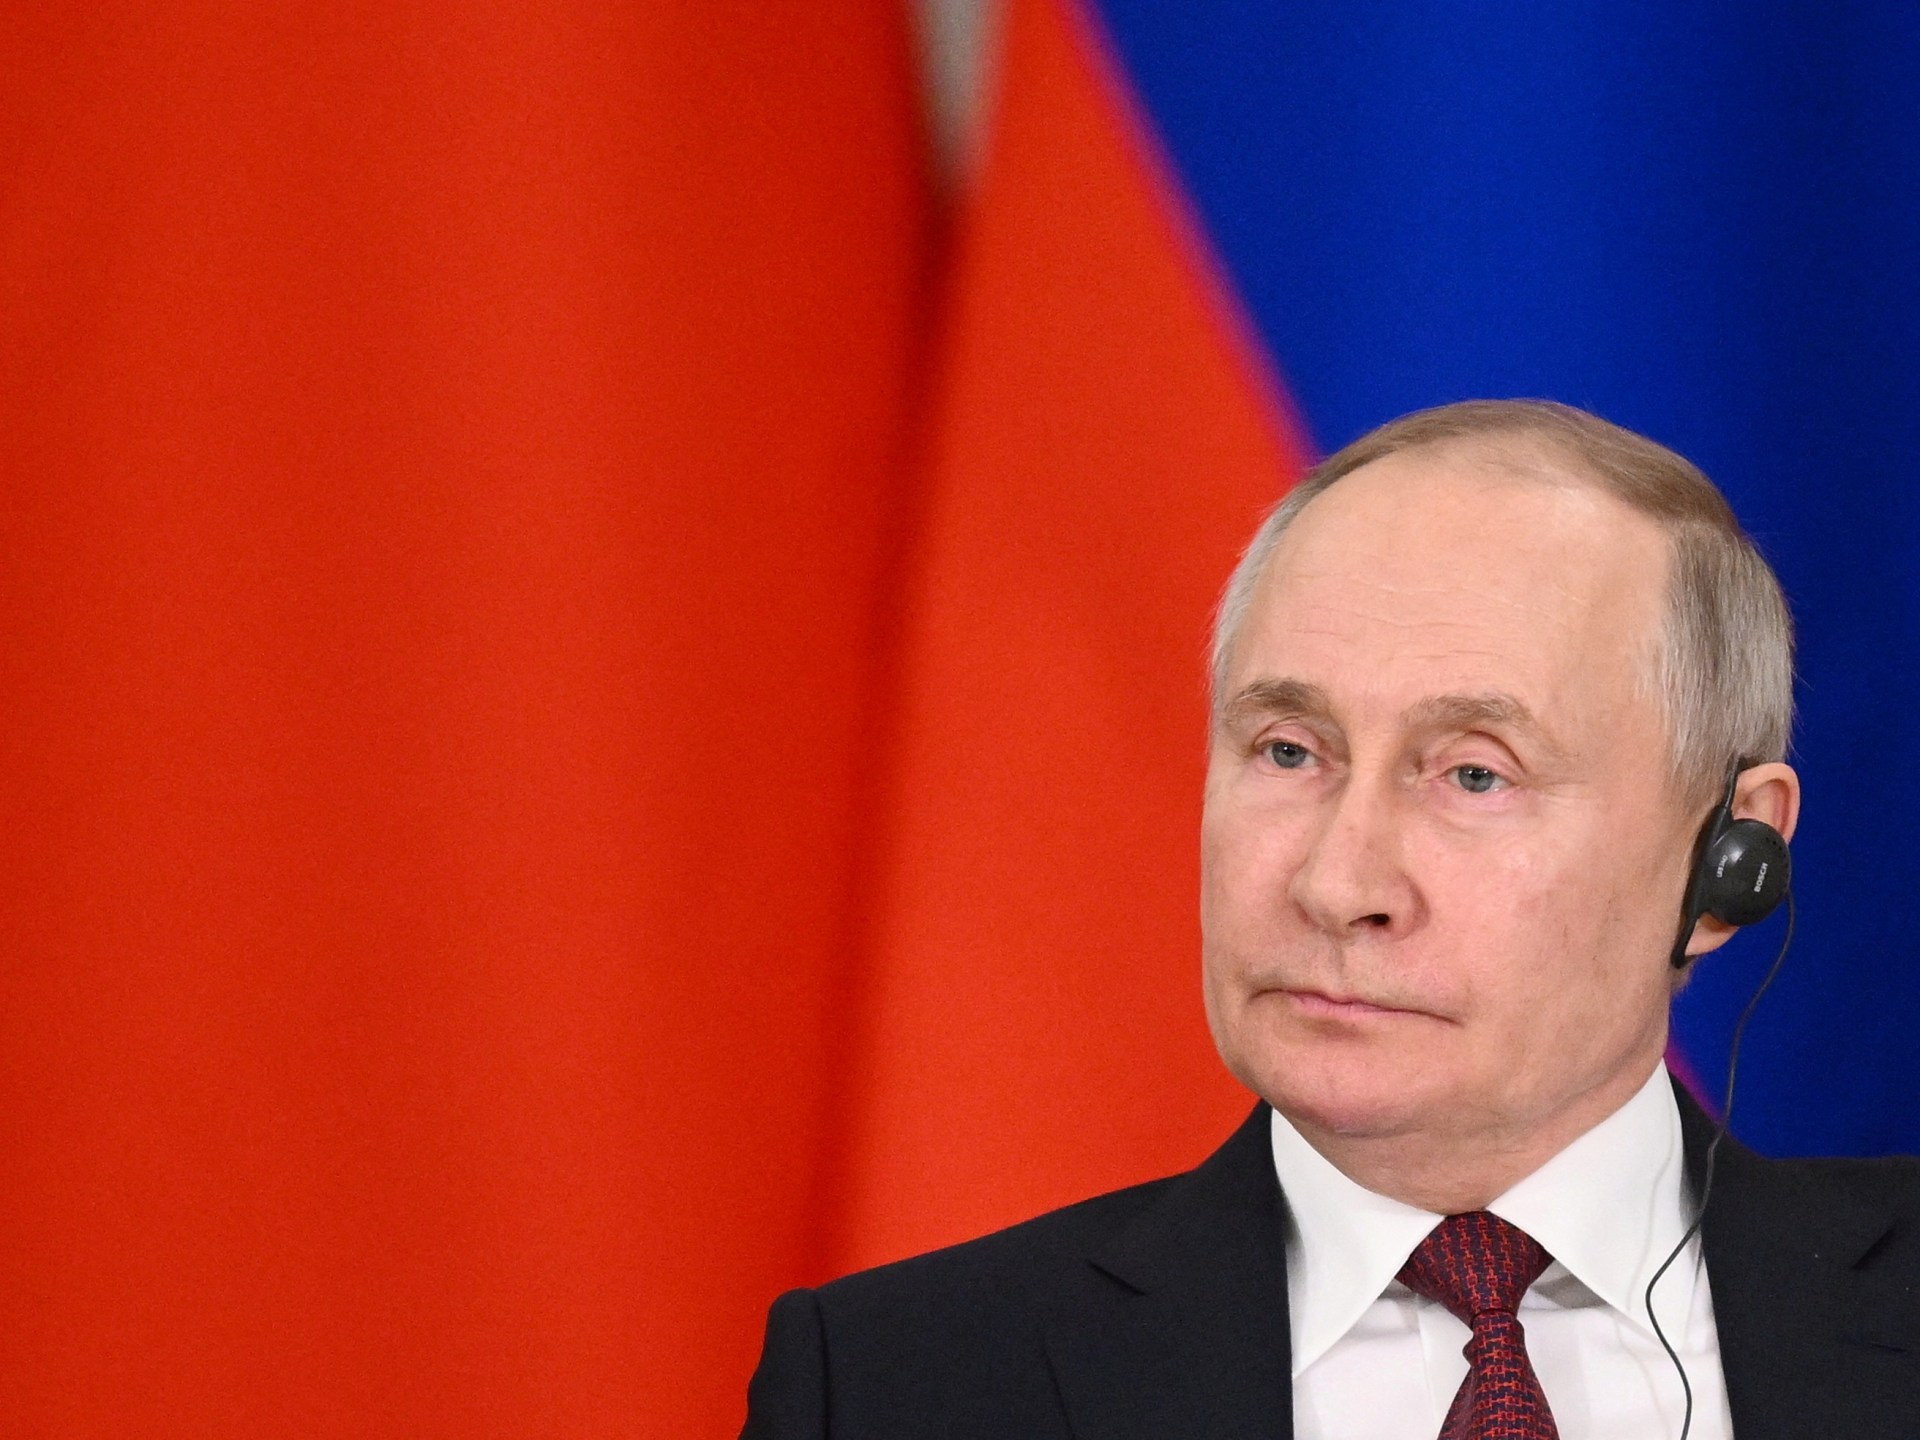 Afrika harus membantu membawa Putin ke ICC |  ICC